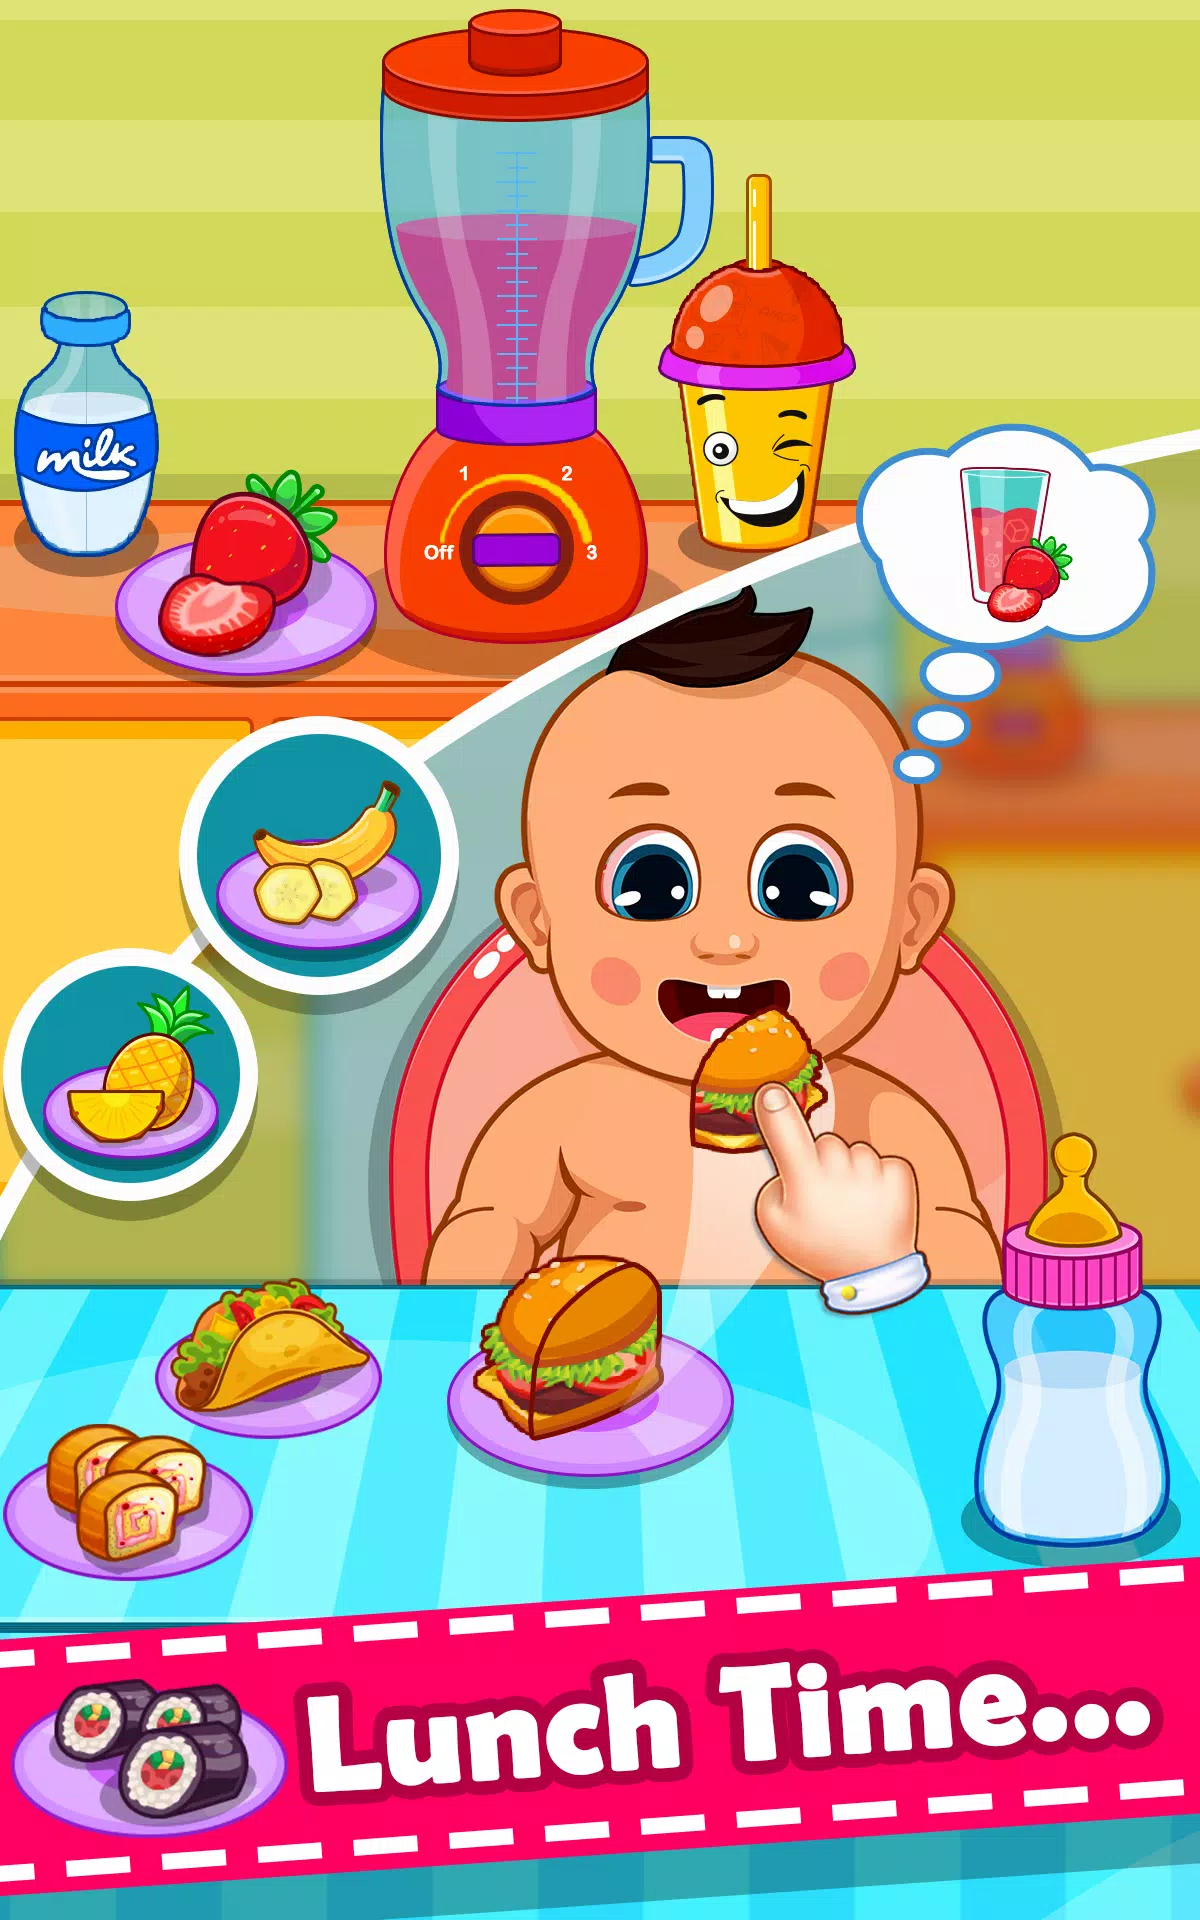 Baby Games: 2+ kids, toddlers 2.4 APK - com.bebi.family.baby.games.mg2 APK  Download